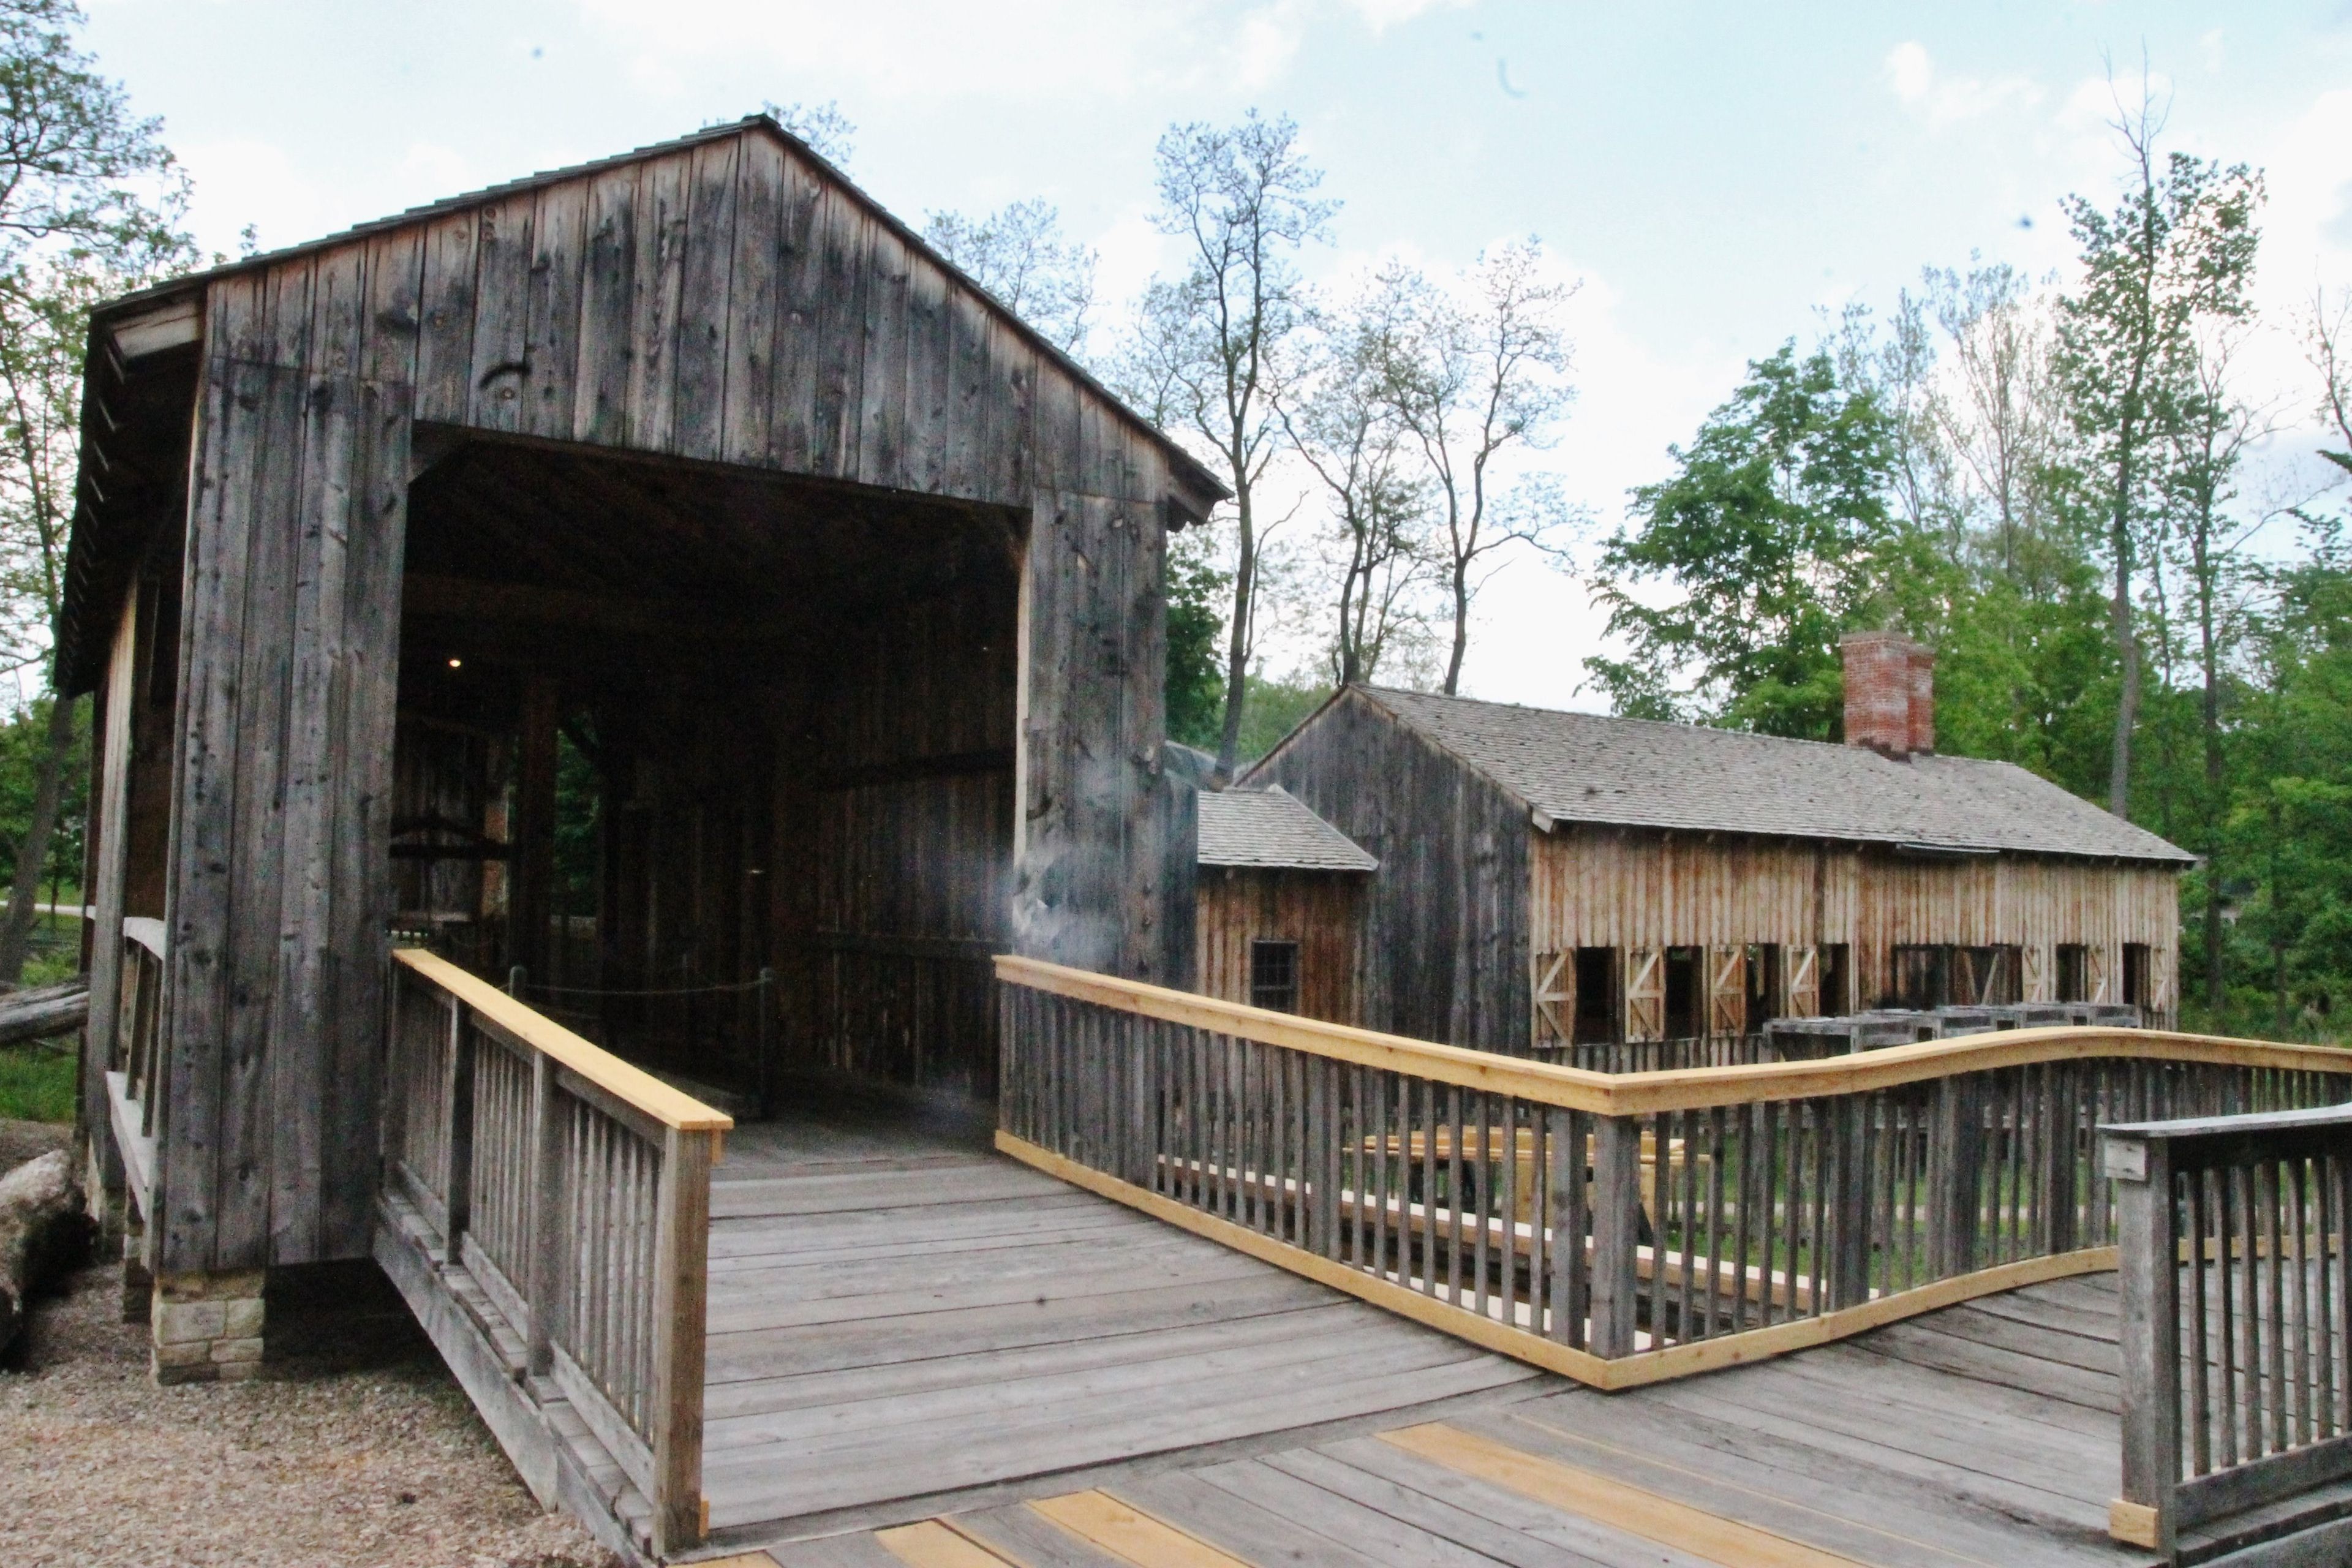 The old sawmill in Kirtland, Ohio.